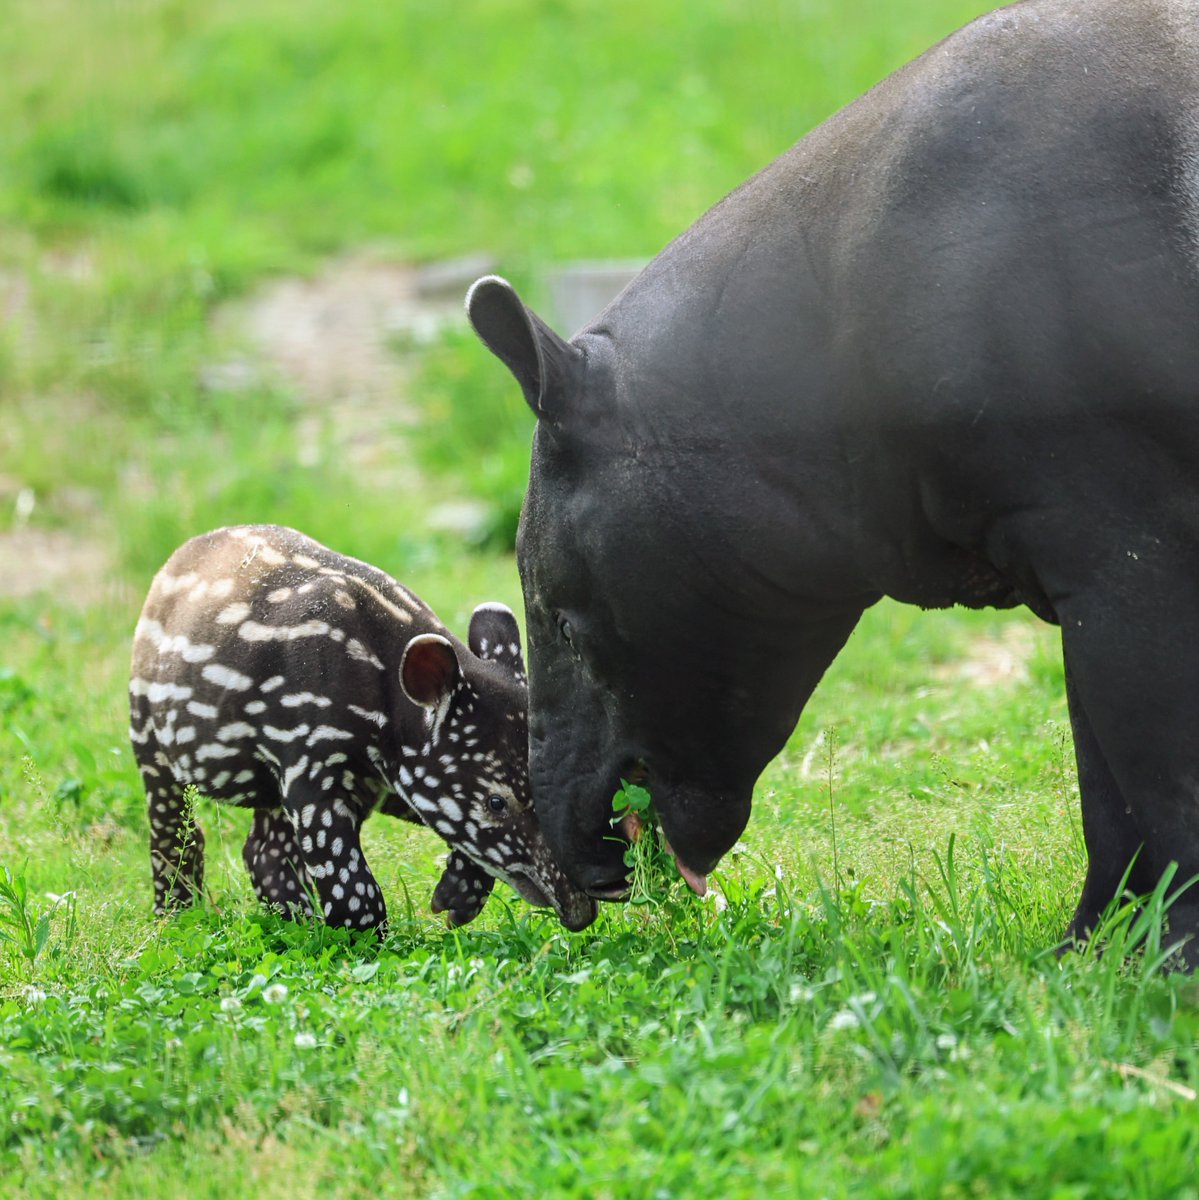 ボクの初節句ですね🎏
おめでとうございます㊗️
健やかに育って下さい😊

ワカバ仔💚(生後1ヶ月)
2024年4月3日生まれ
2024/4/26㈮撮影📷
#マレーバク 
#ヒカル #ワカバ
#マレーバクの子ども
#群馬サファリパーク
#tapirusindicus 
#malayantapir